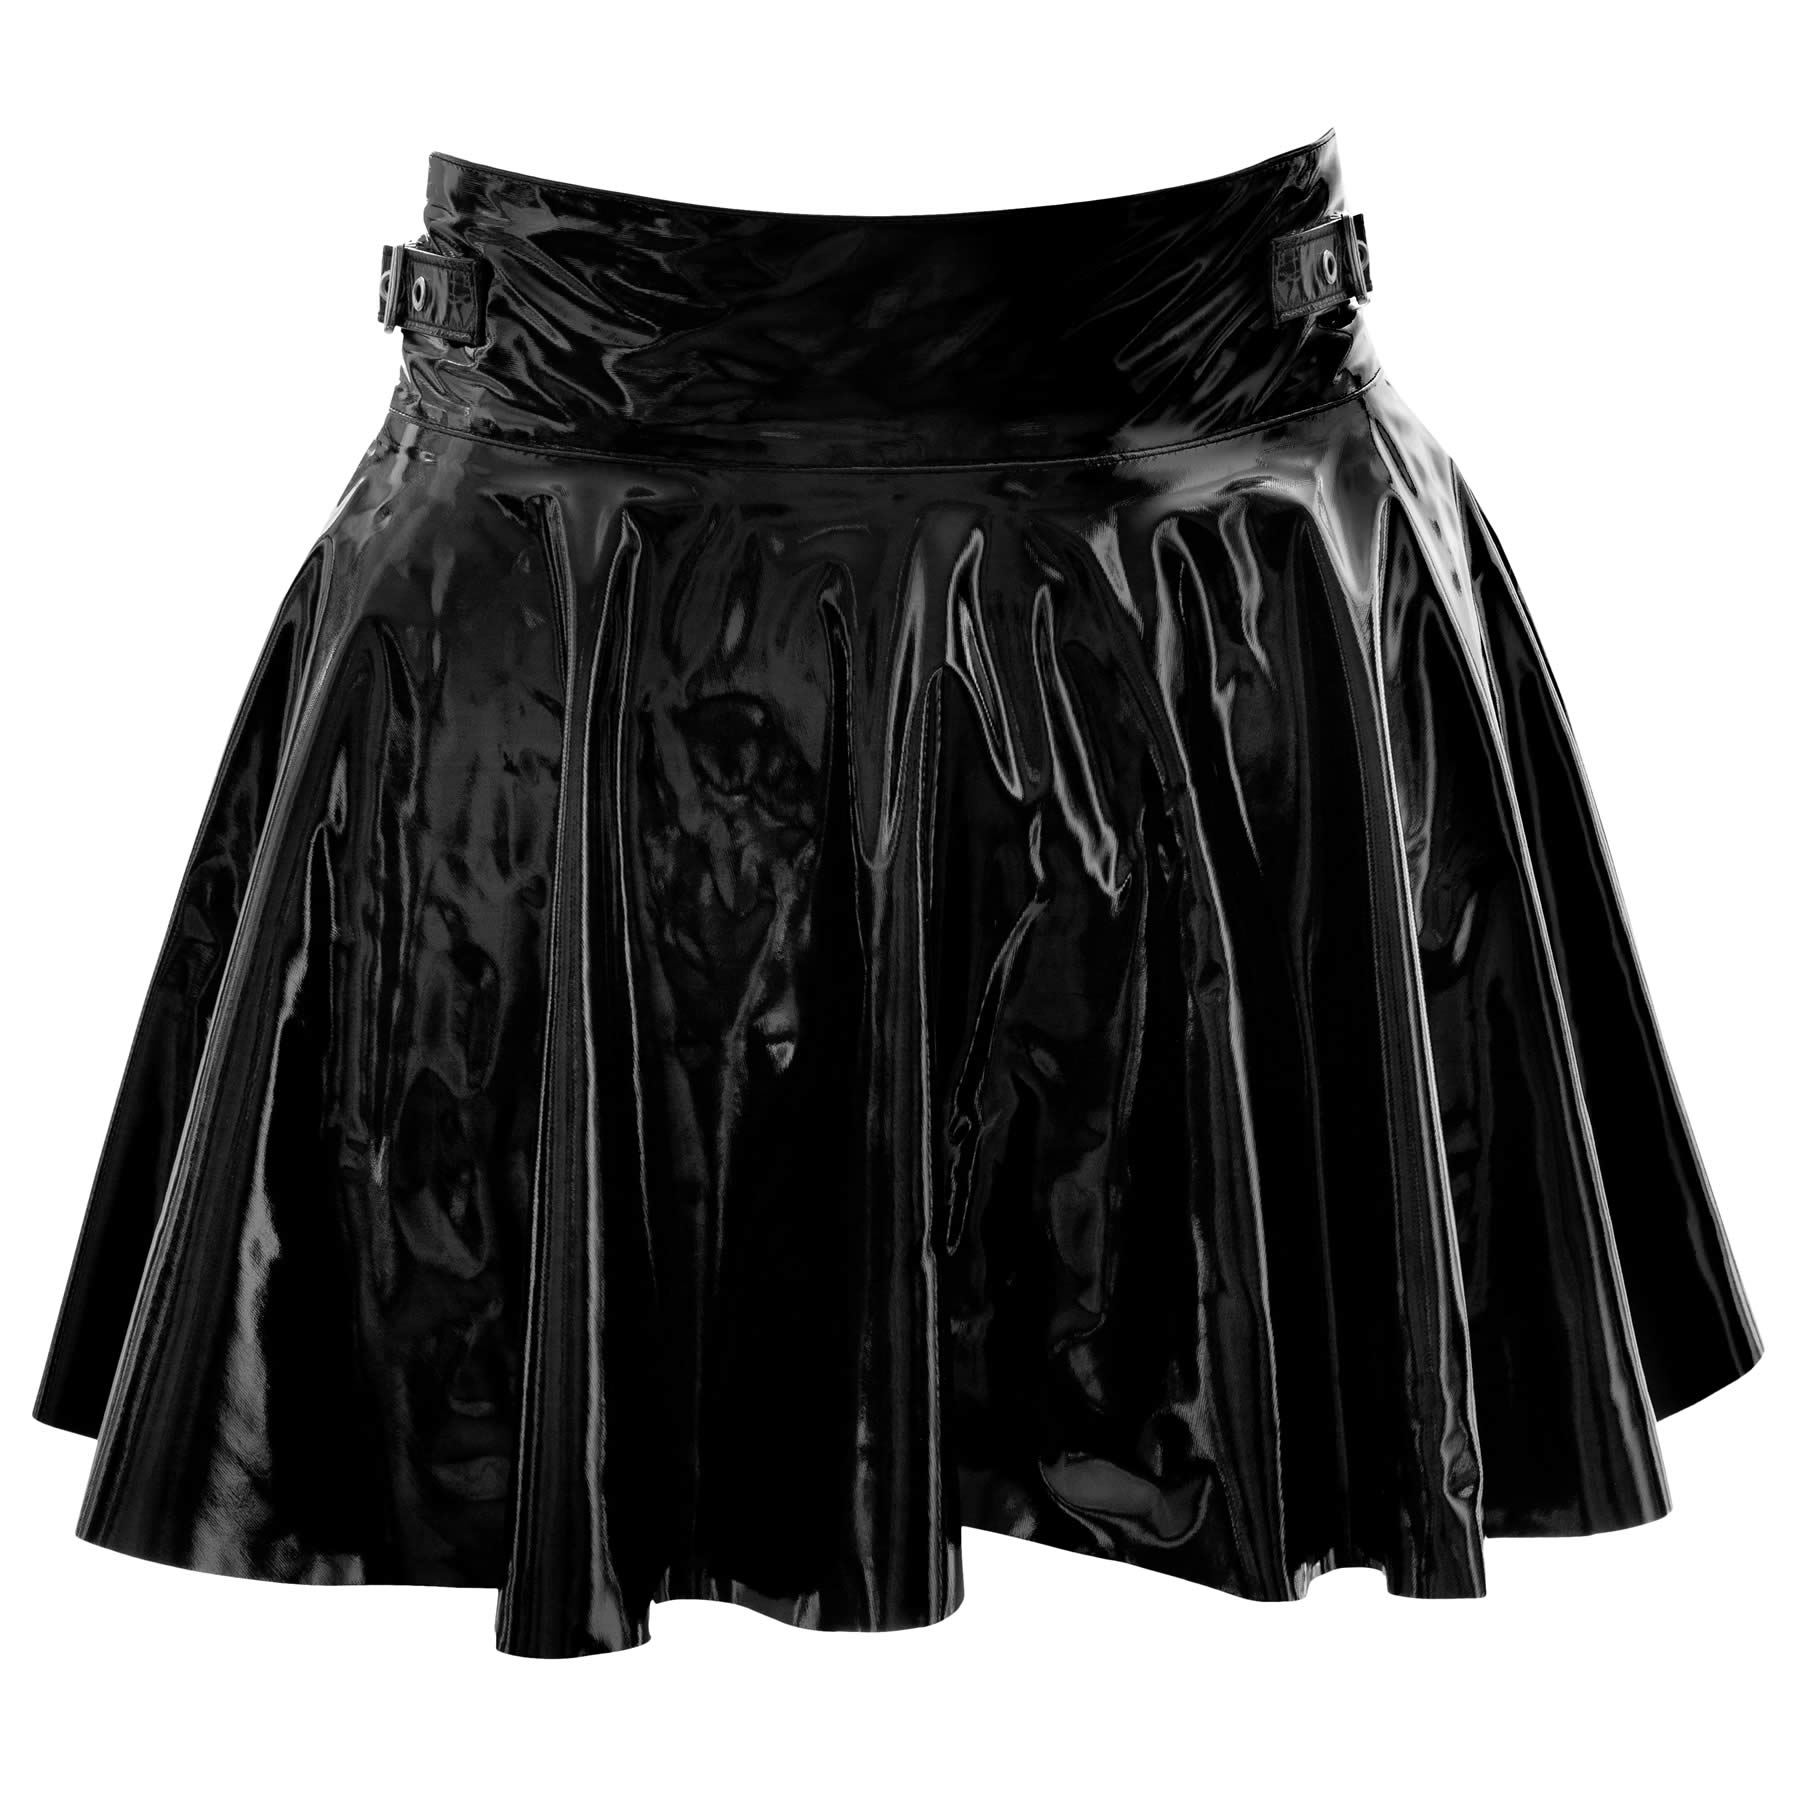 Lak nederdel i sort med lynls